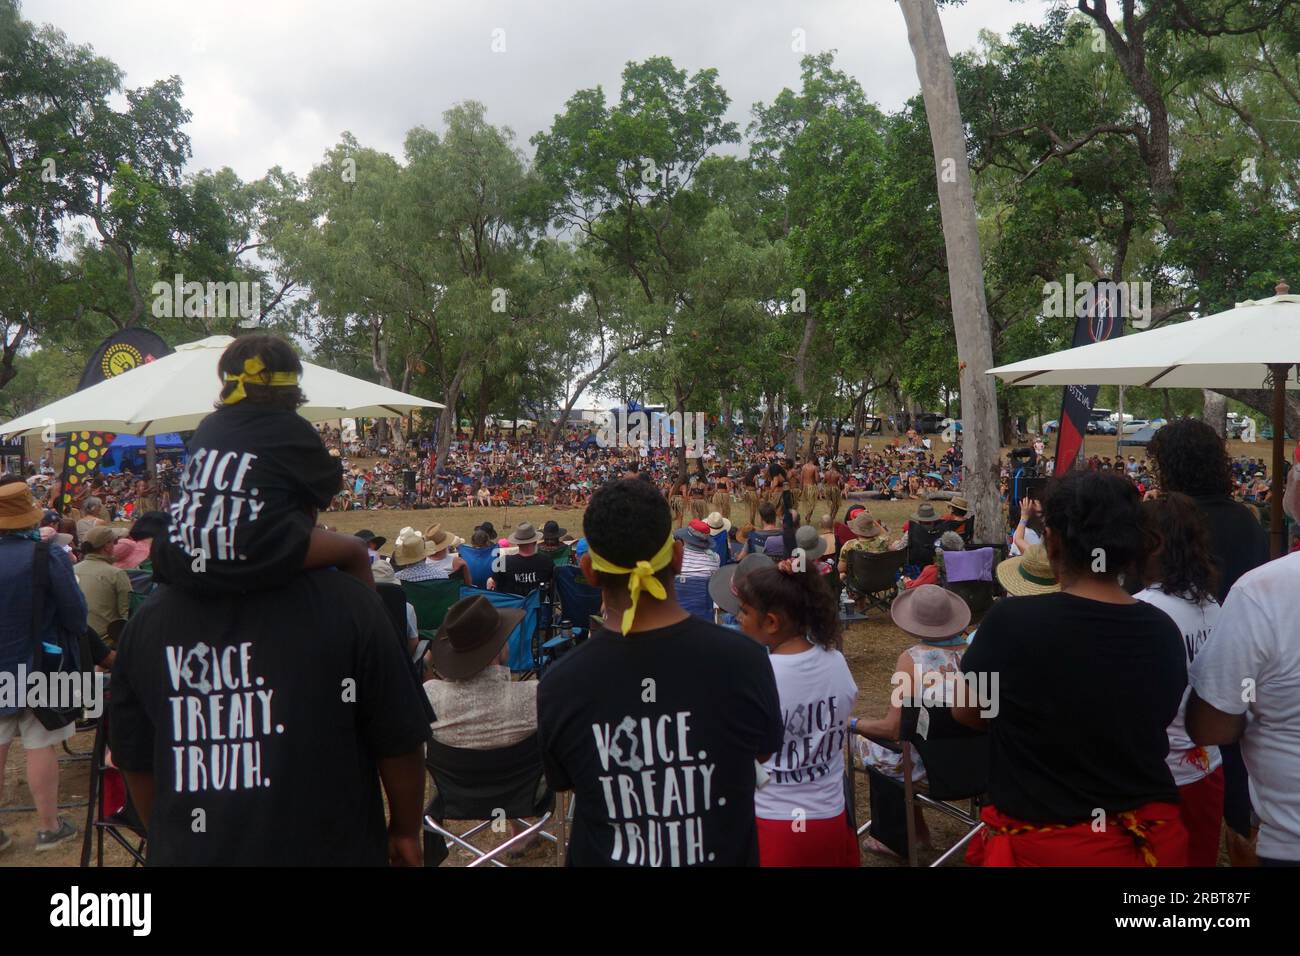 T-shirts voix, traité, vérité au Laura Quinkan Indigenous Dance Festival, Cape York Peninsula, Queensland, Australie, 2023. Pas de MR ou PR Banque D'Images